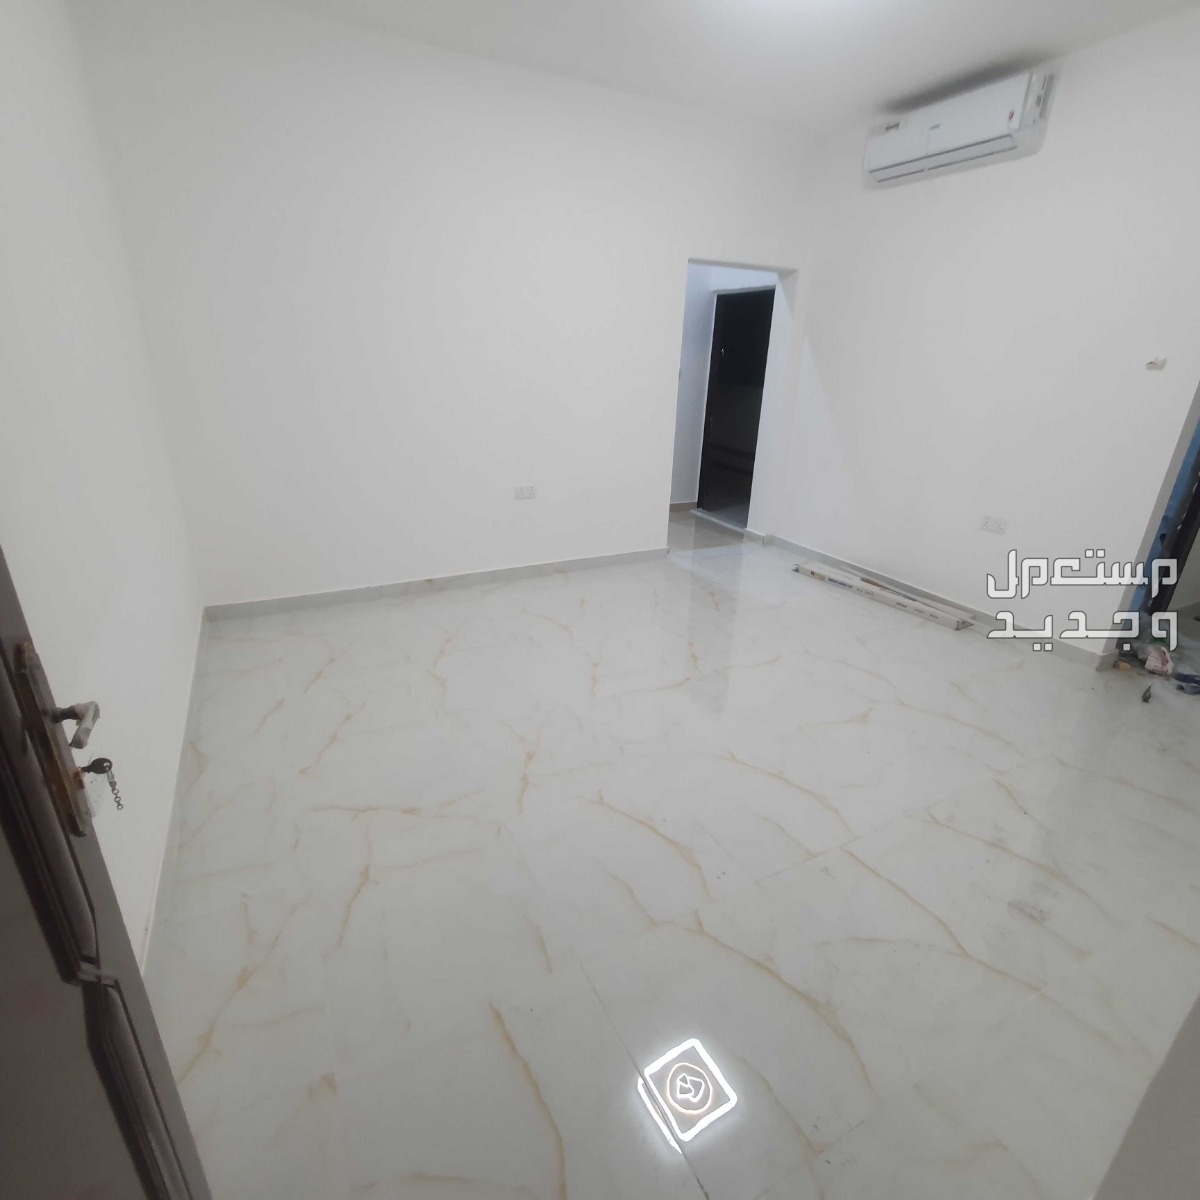 شقة للإيجار في أبو ظبي بسعر 3500 درهم إماراتي